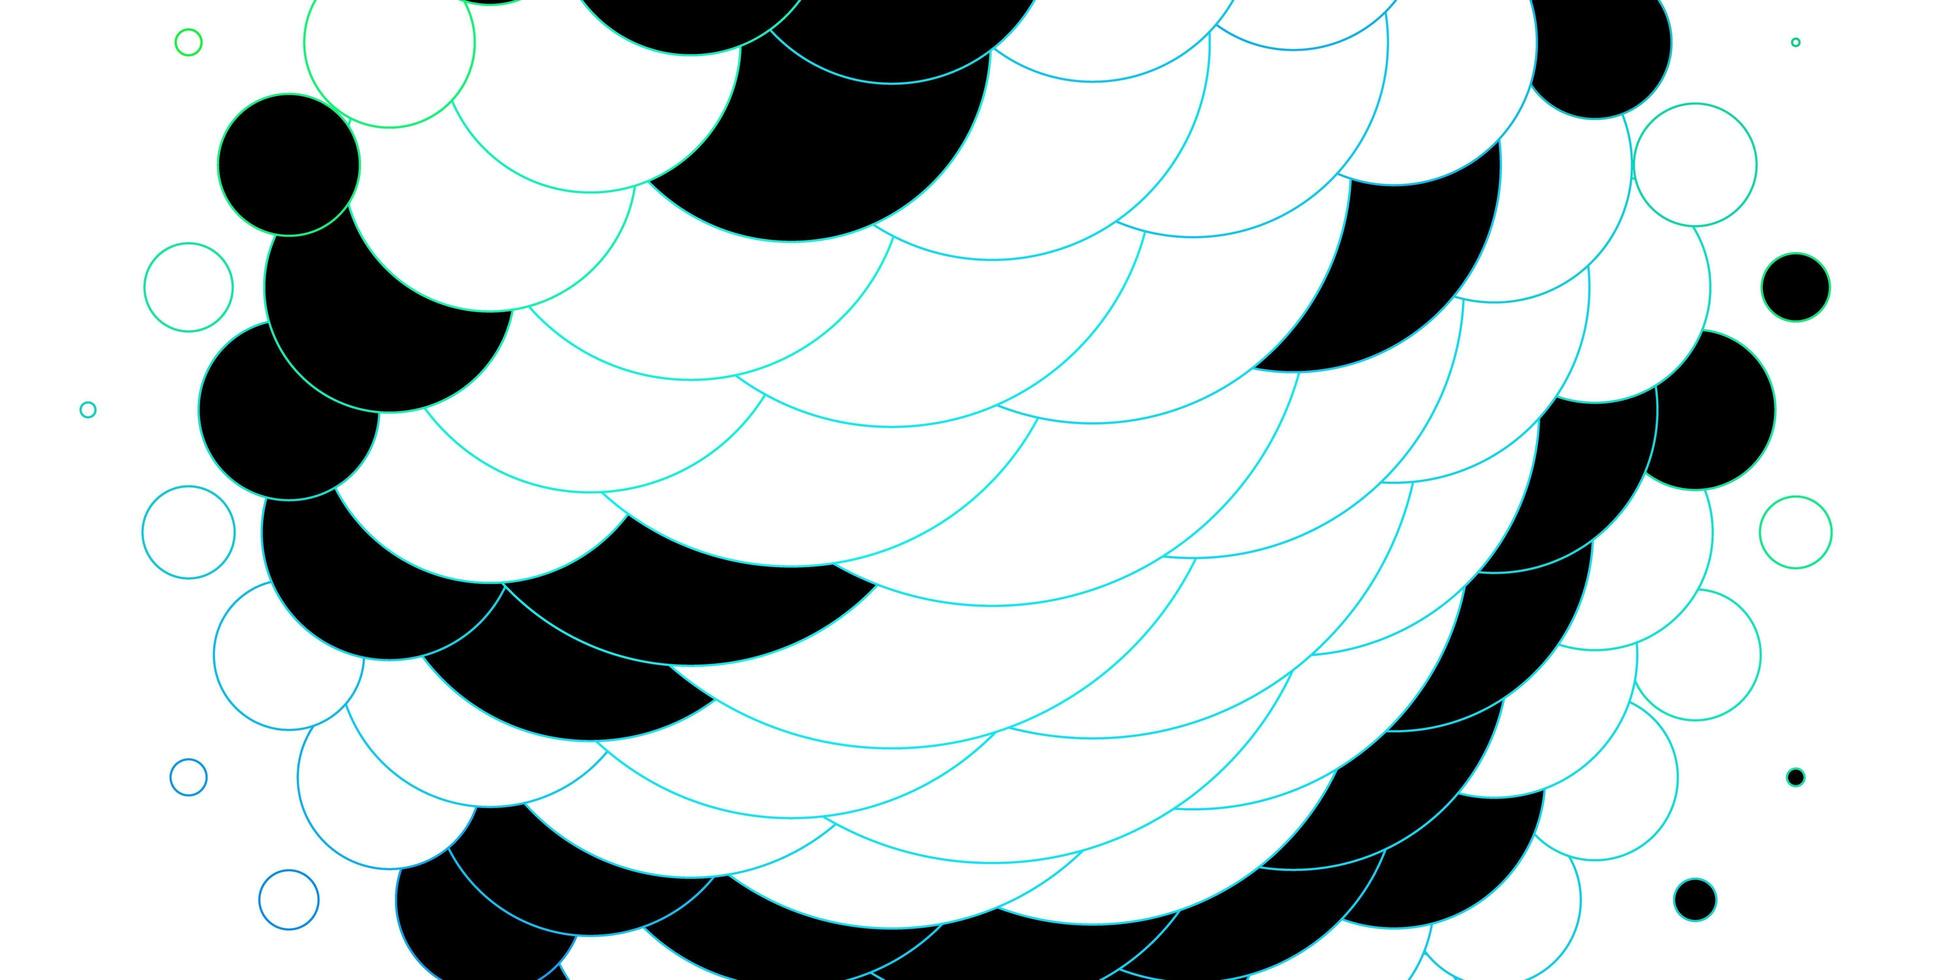 lichtblauwe, groene vectorlay-out met cirkelvormen. abstract decoratief ontwerp in gradiëntstijl met bubbels. patroon voor behang, gordijnen. vector